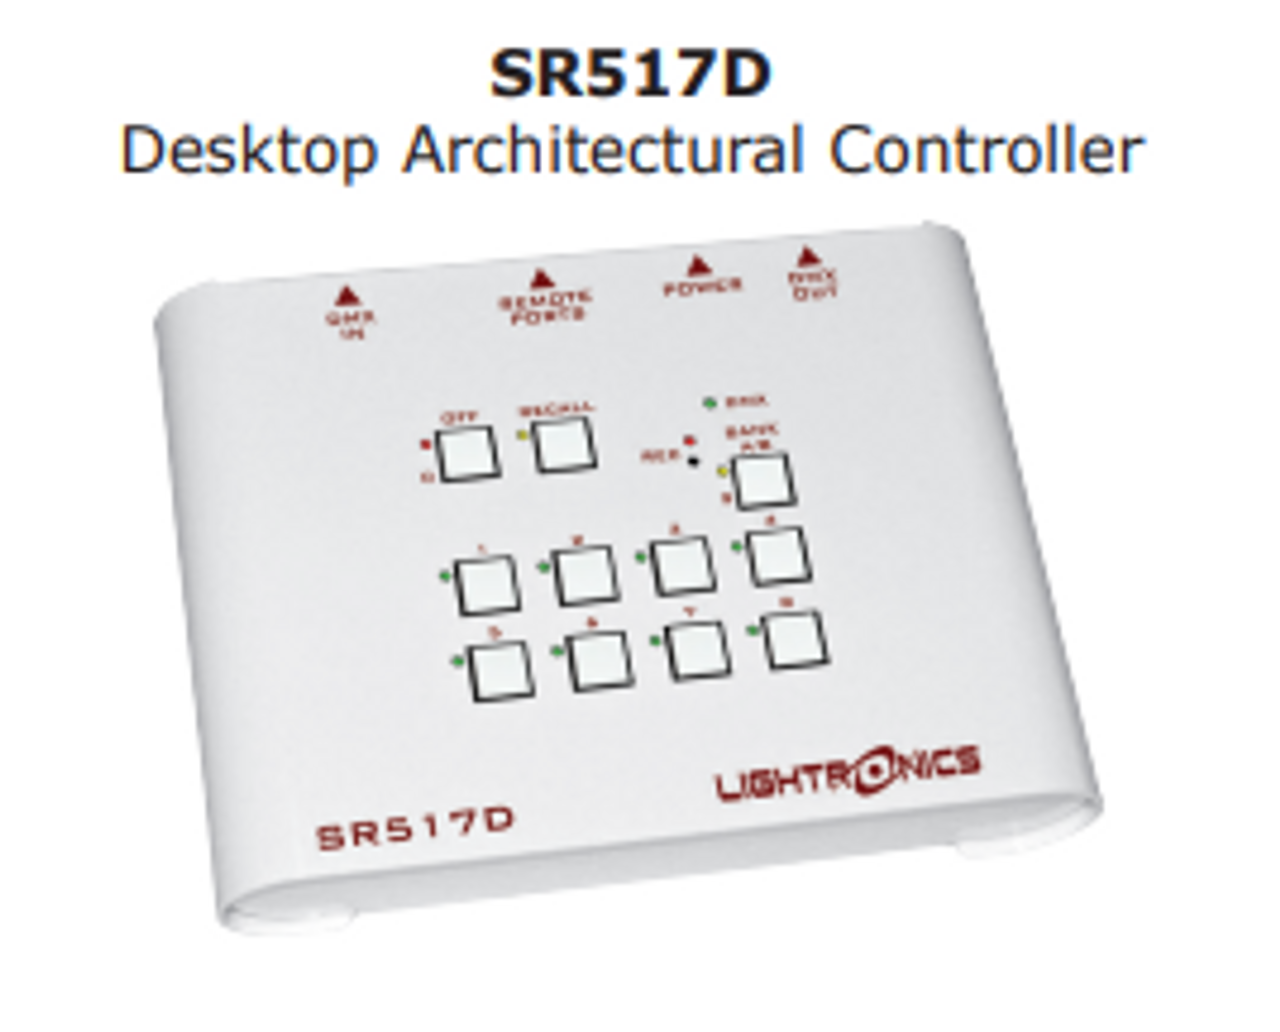 Lightronics SR517D Desktop Architectural Controller